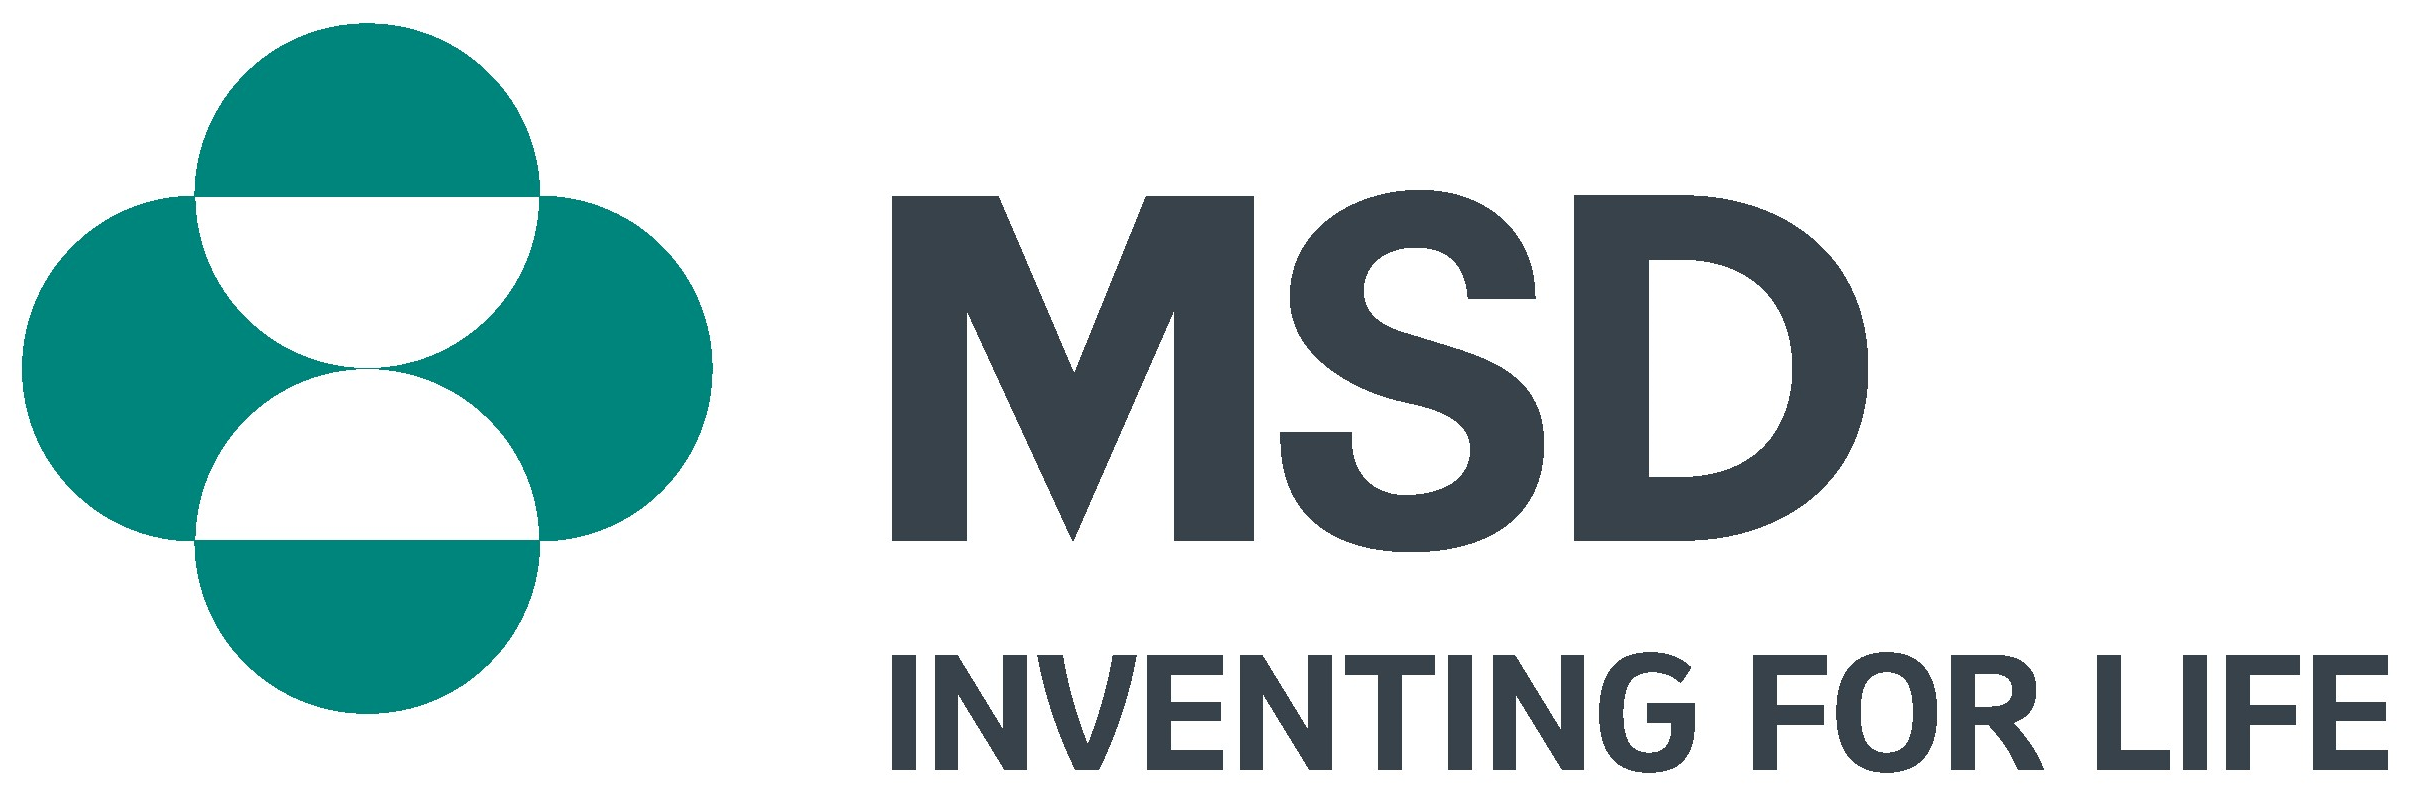 Company logo of MSD